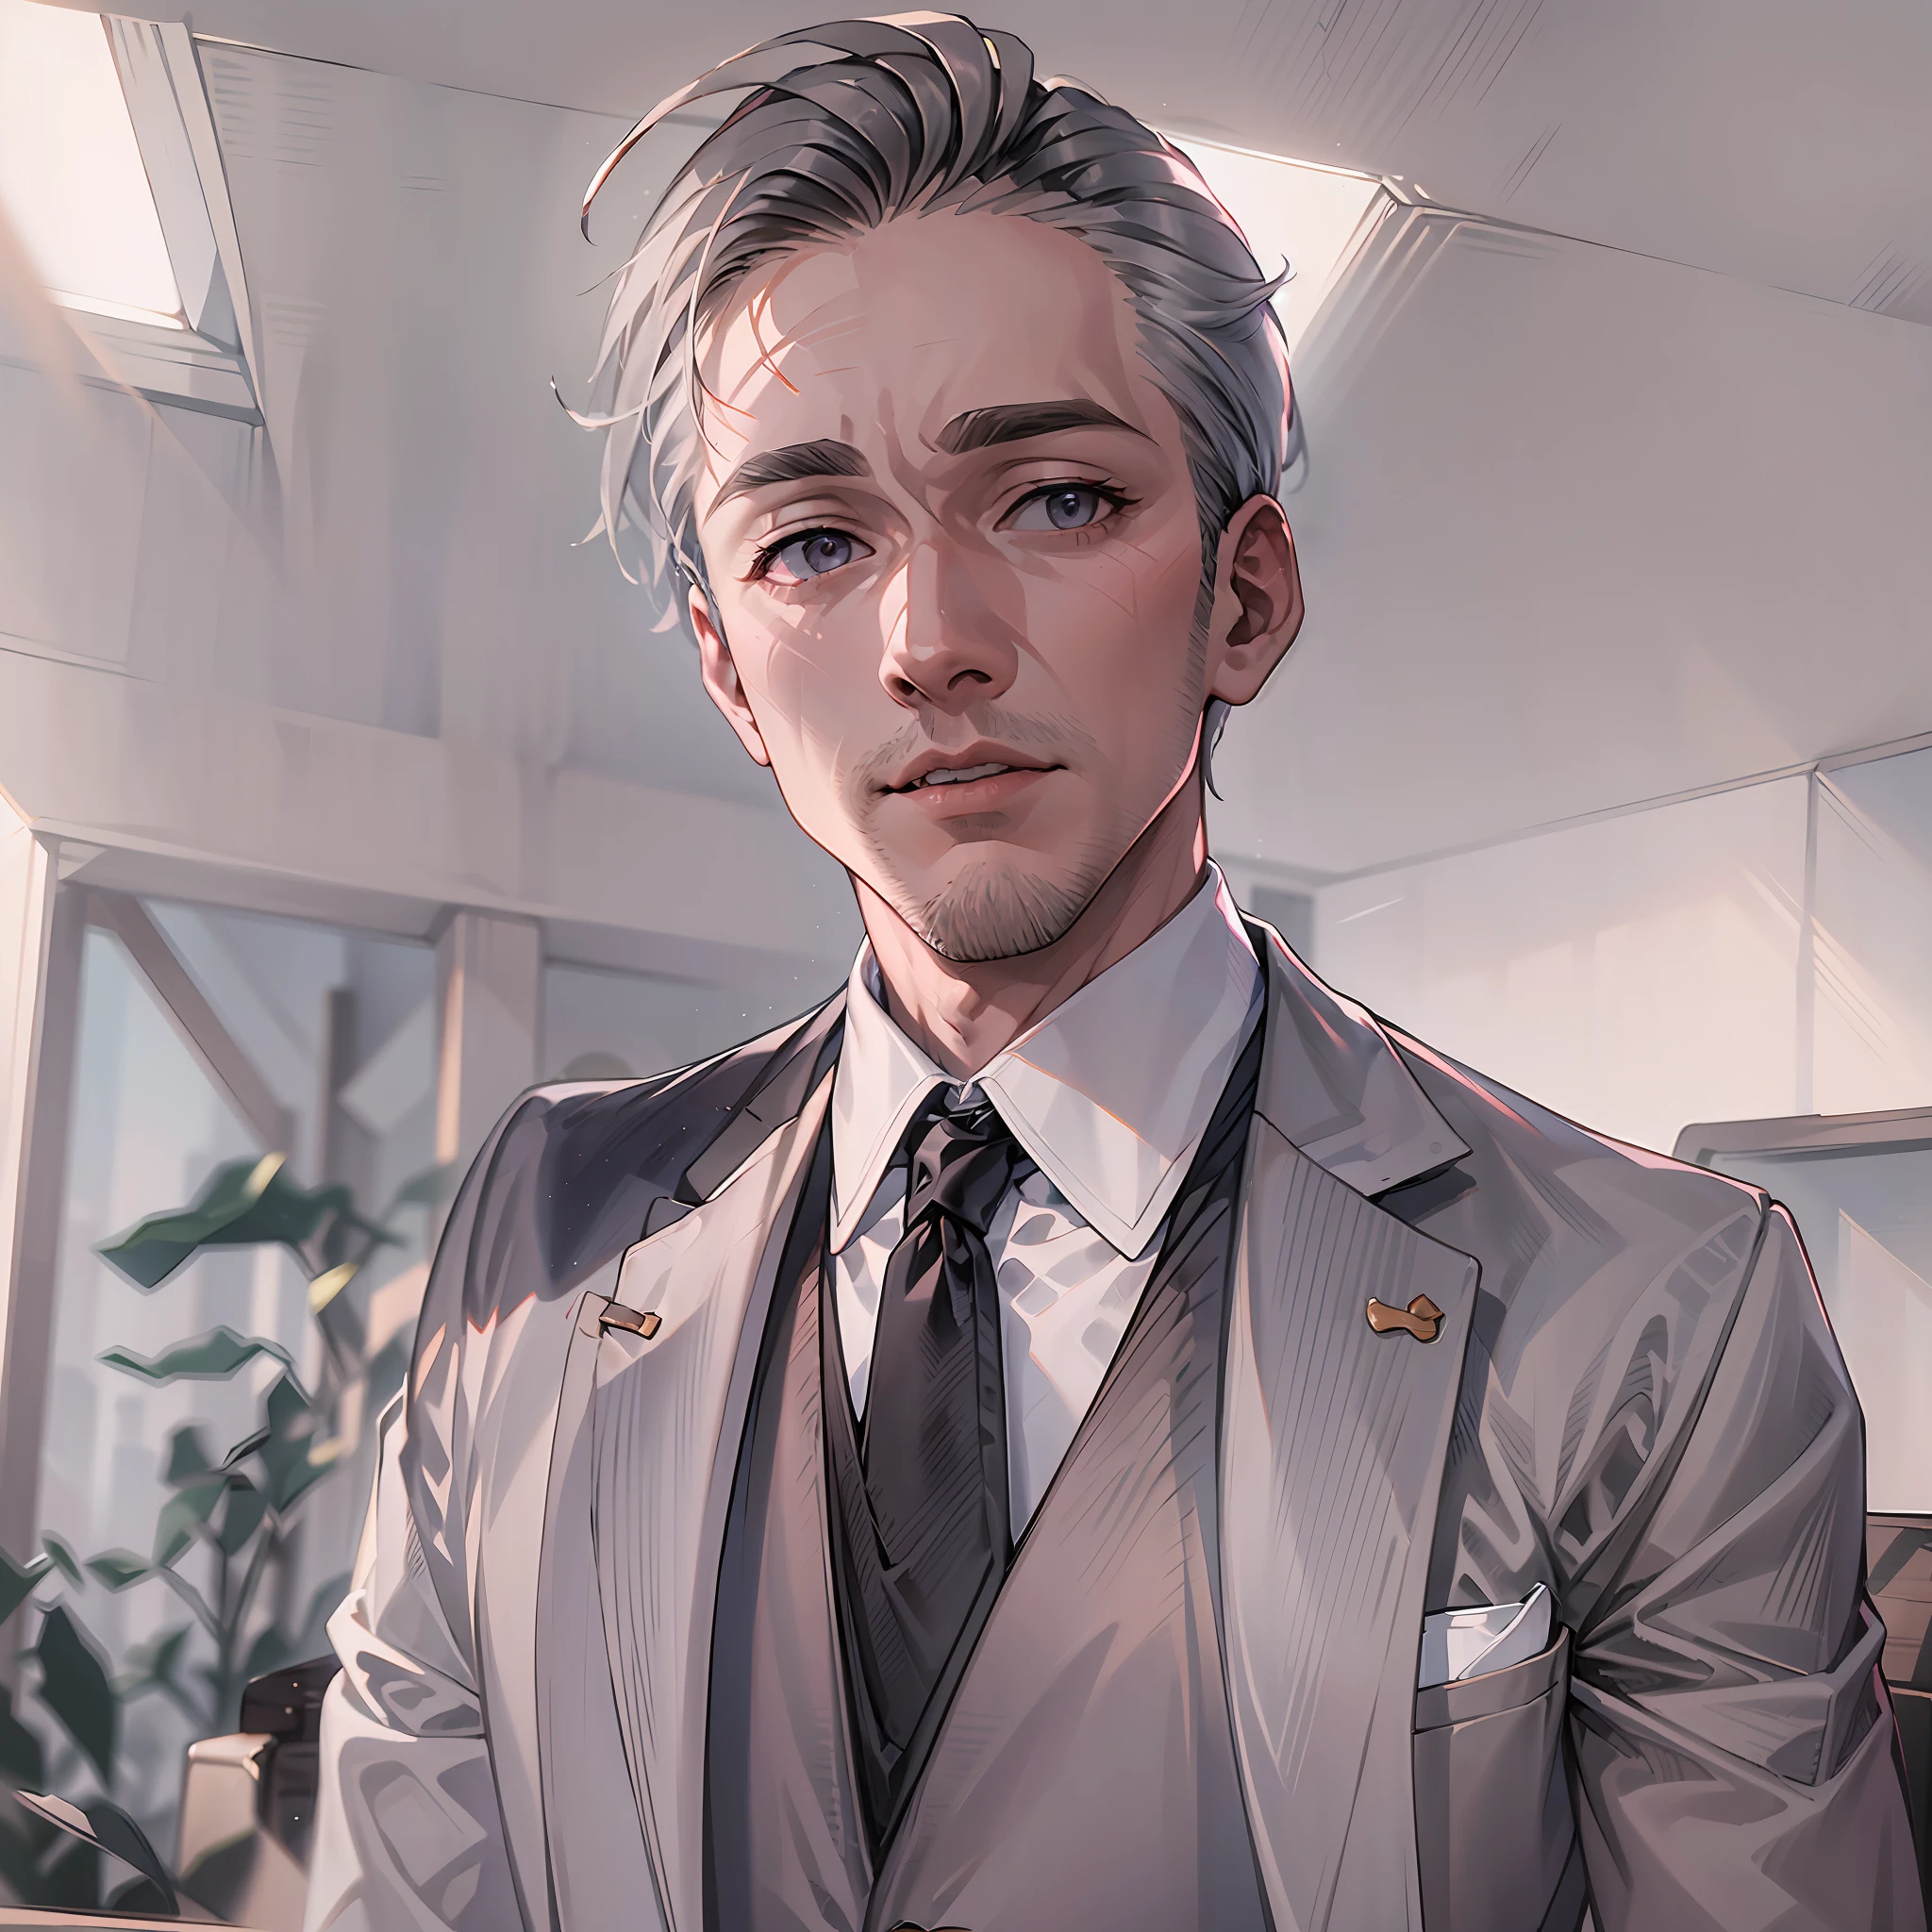 Un hombre de traje y corbata，pelo corto y detallado，humano，fondo blanco，Gray tones。